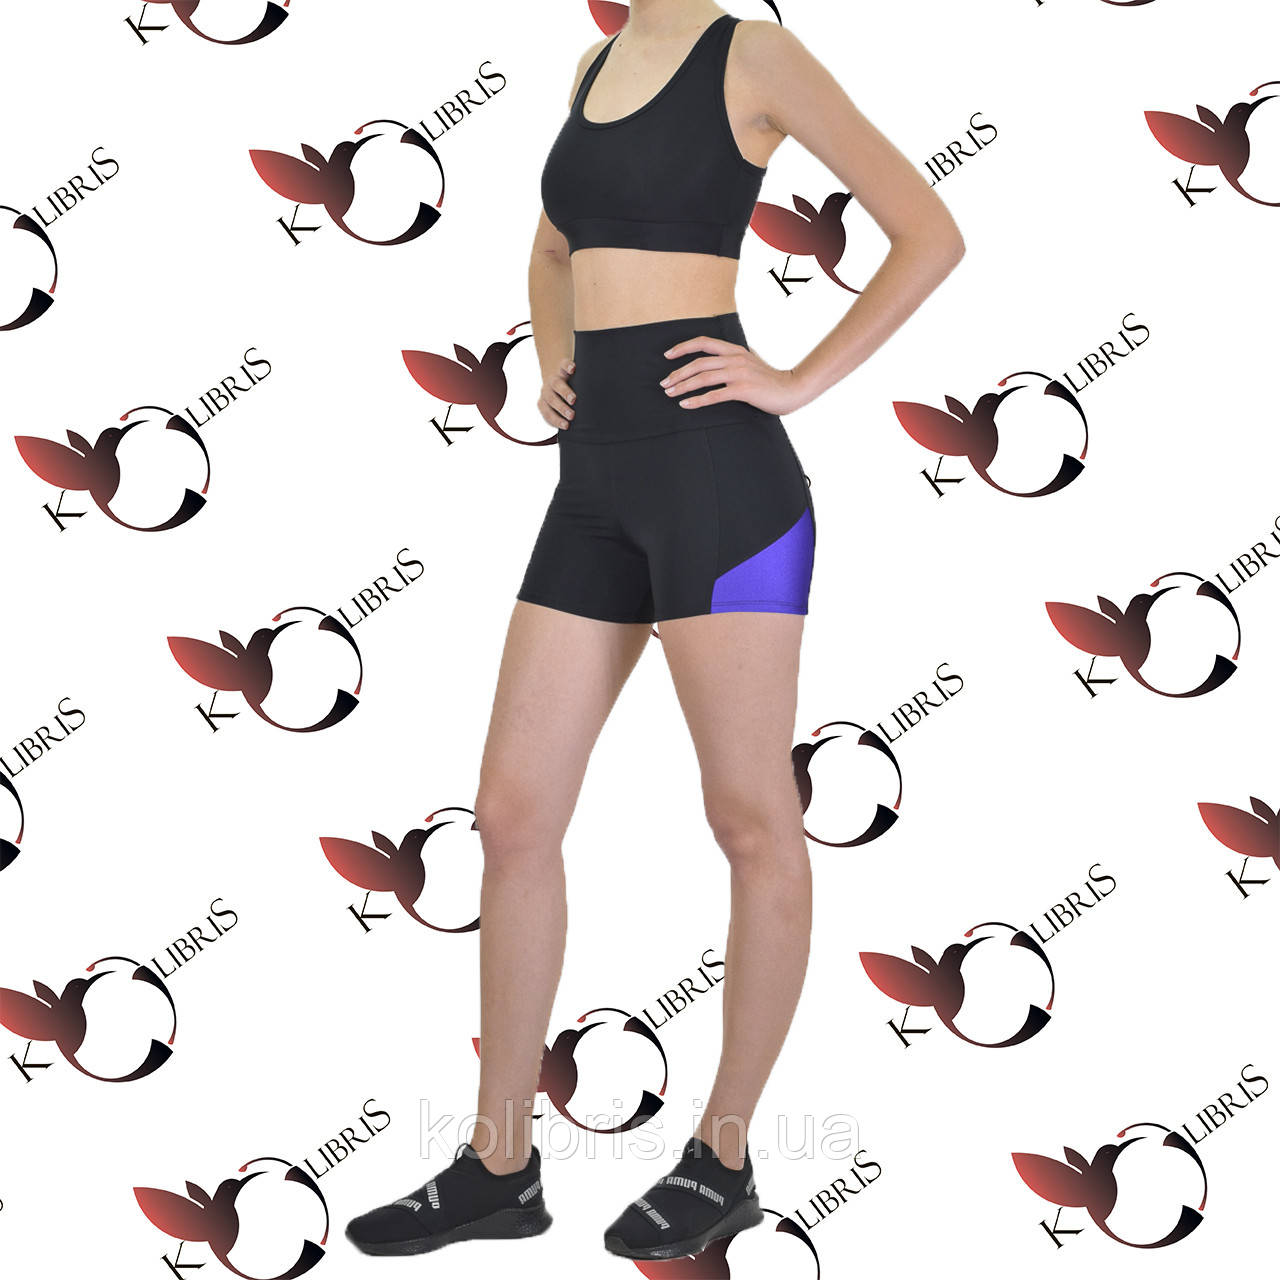 Жіночий спортивний комплект шорти-утяжка з вставками фіолет і топ без чашок